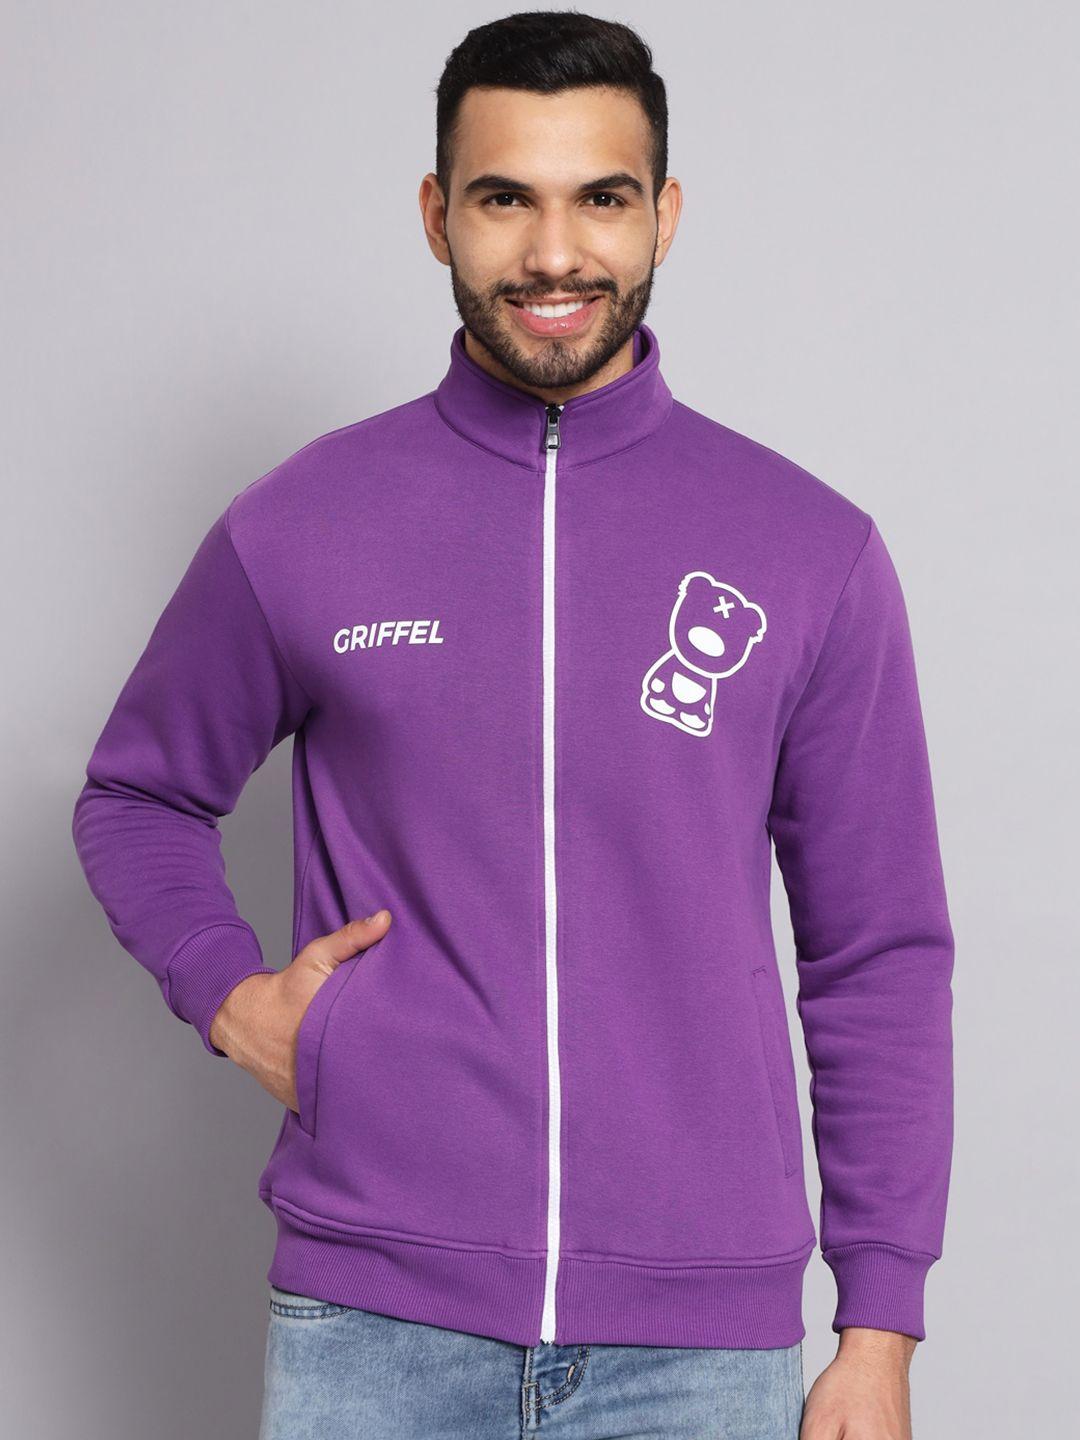 griffel men purple printed sweatshirt